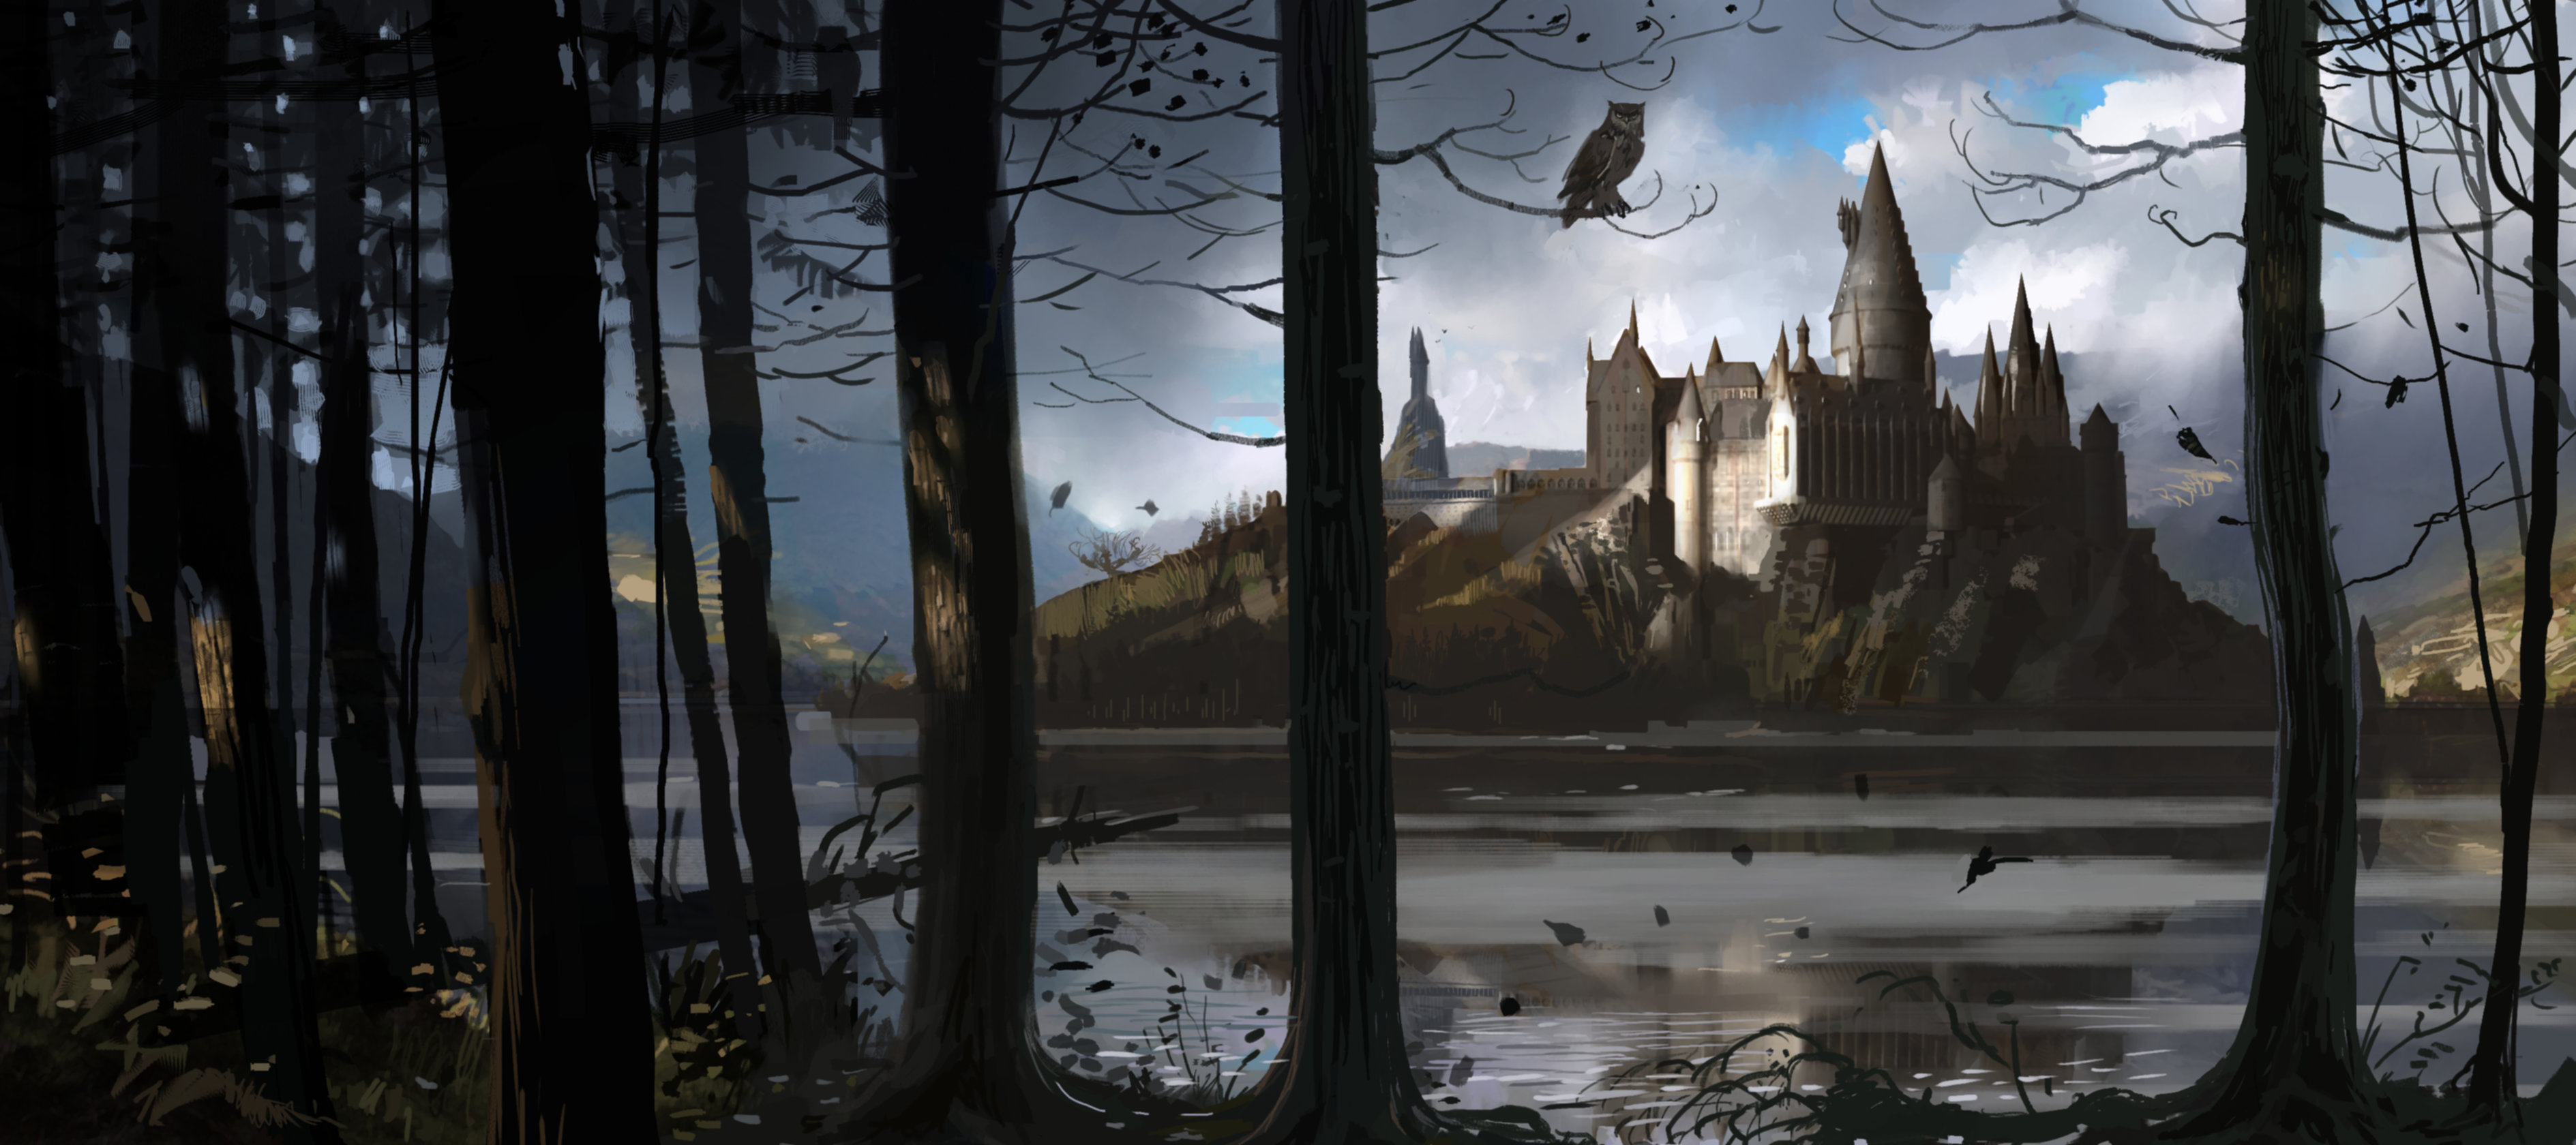 HogwartsCastle_WB_F4_HogwartsThroughTheTrees_Illust_100615_Land.jpg